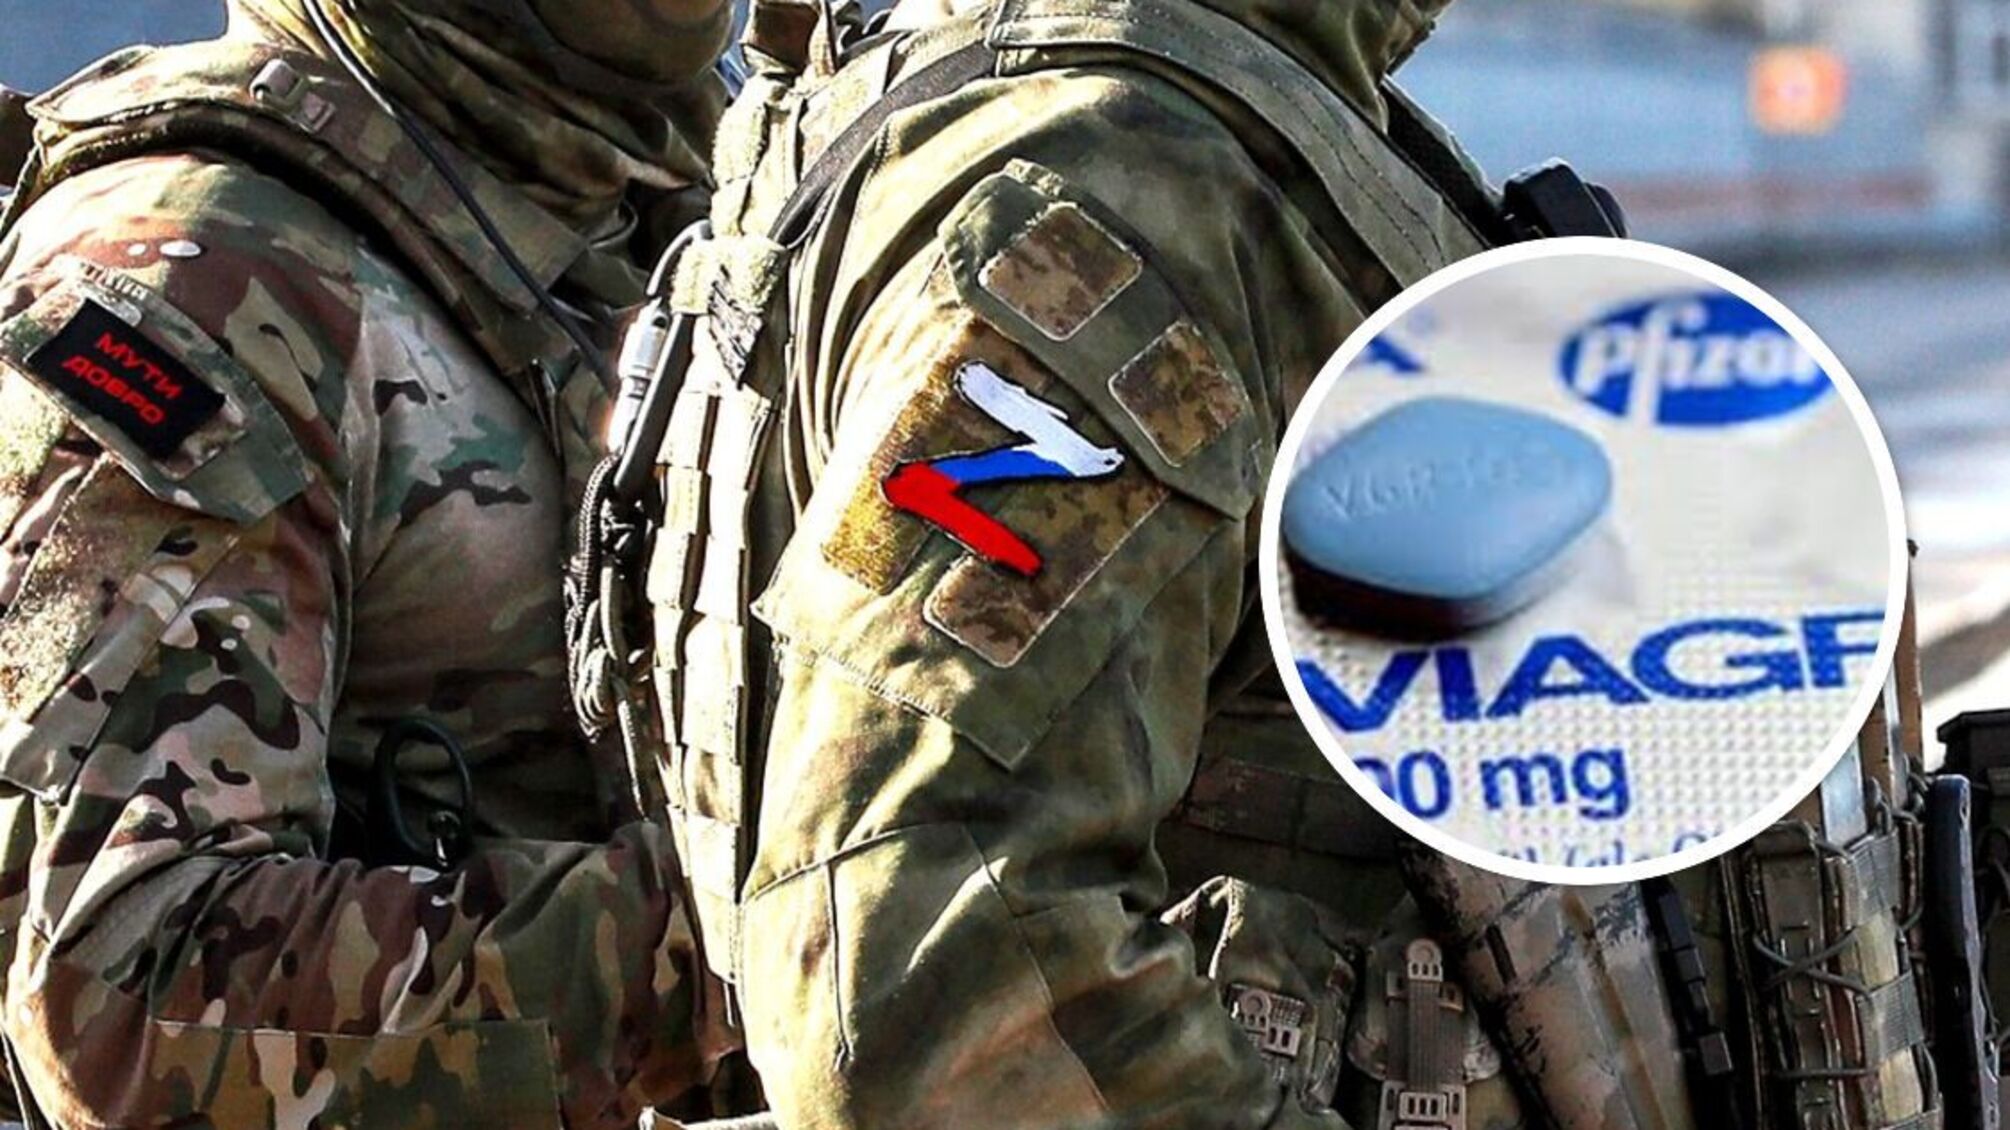 'Виагра' в карманах насильников - армия рф официально разрешила россиянам совершать насилие, - ООН